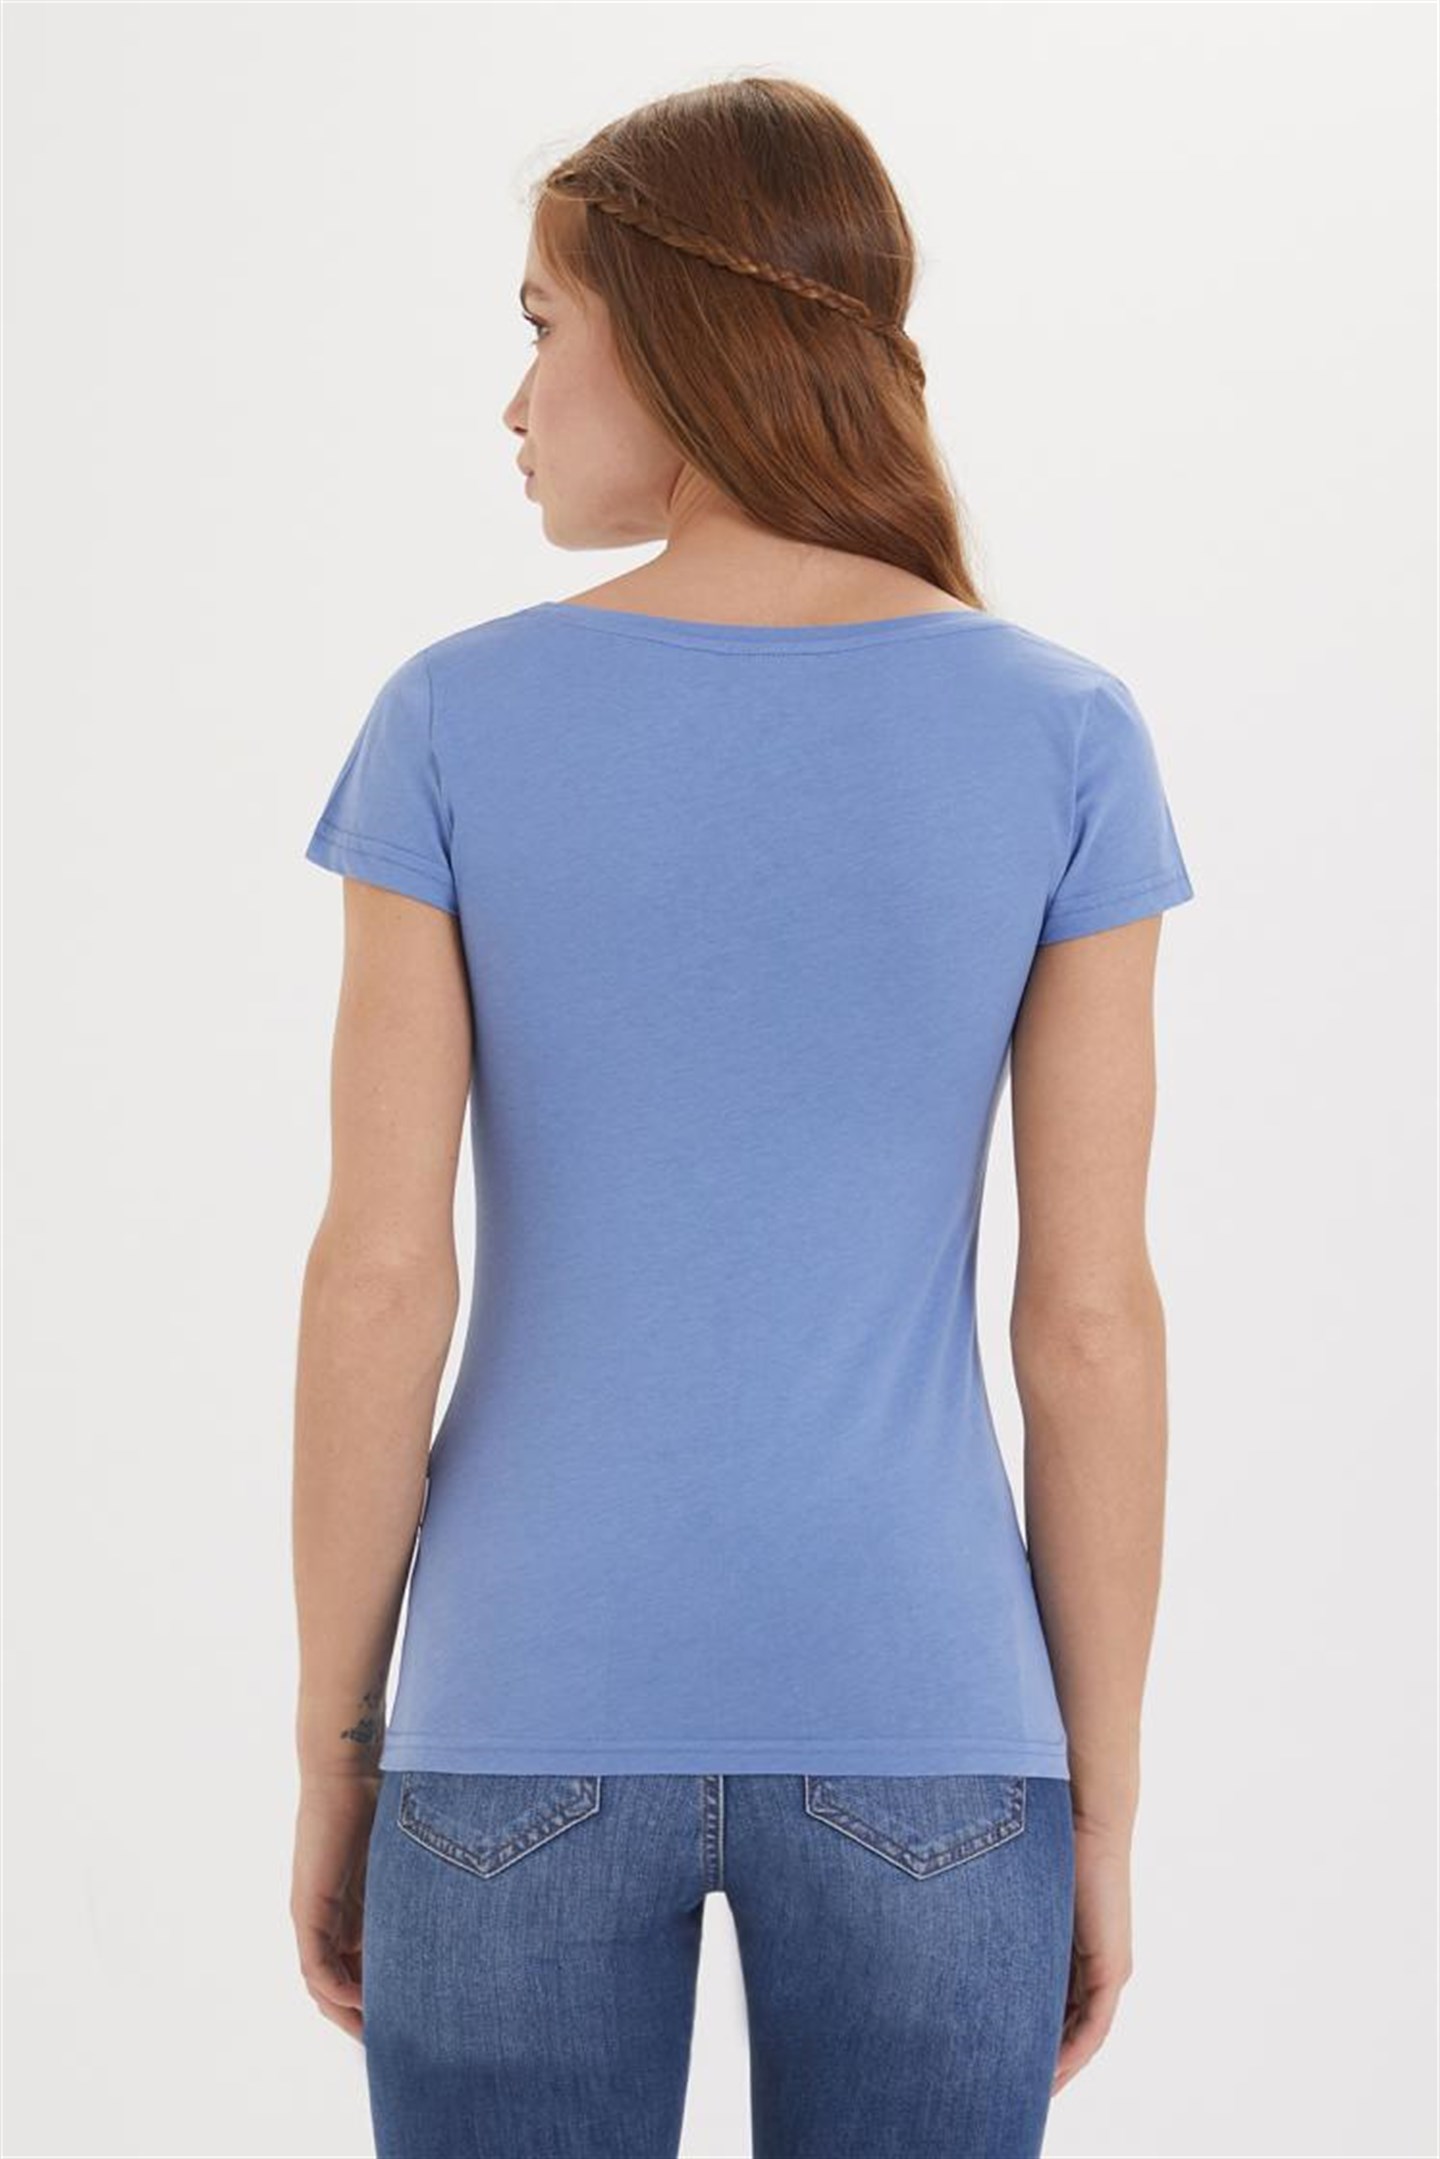 Lee Cooper Cindy Kadın V Yaka T-Shirt Mavi. 4